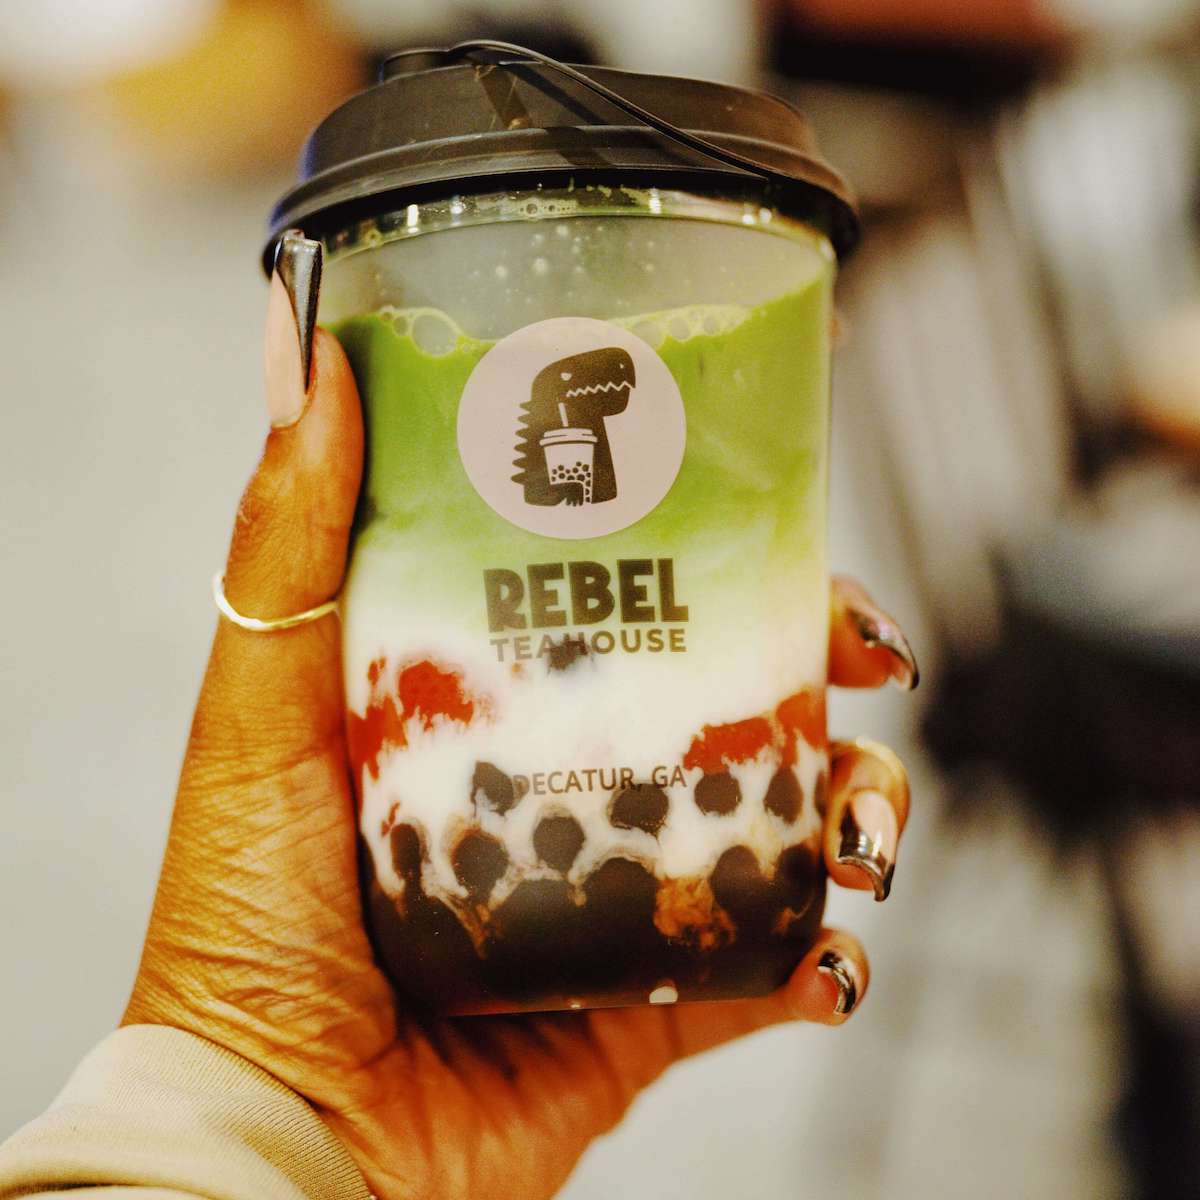 Rebel Teahouse Brings Bubble Milk Tea to Decatur